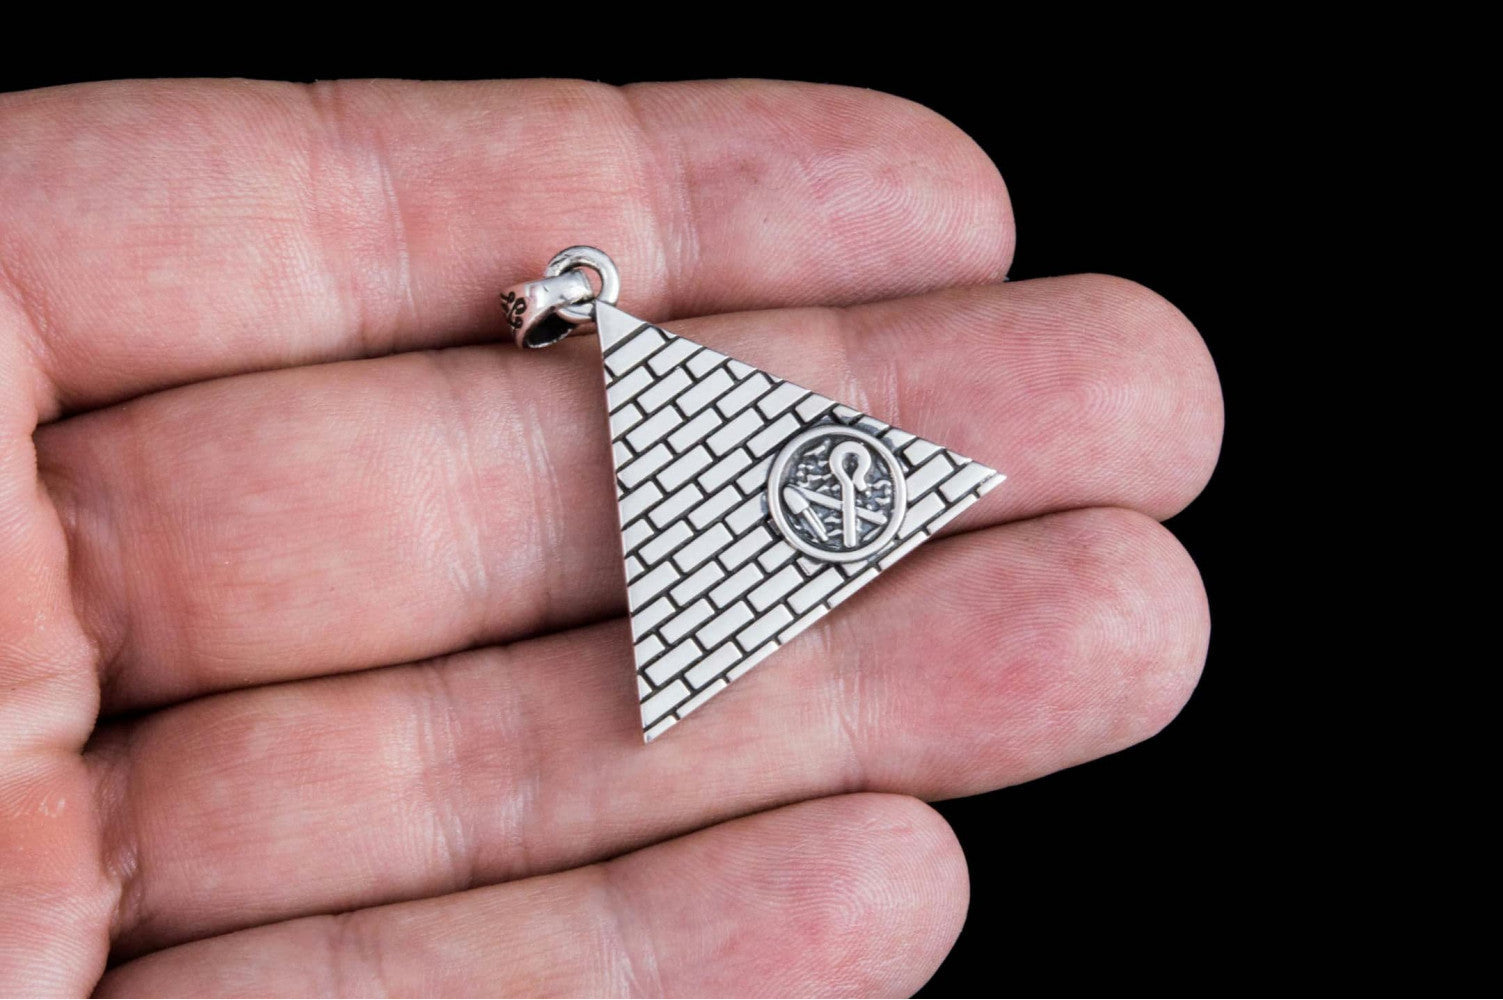 Hekha and Nekhakha Symbol Pendant Sterling Silver Egypt Jewelry - vikingworkshop